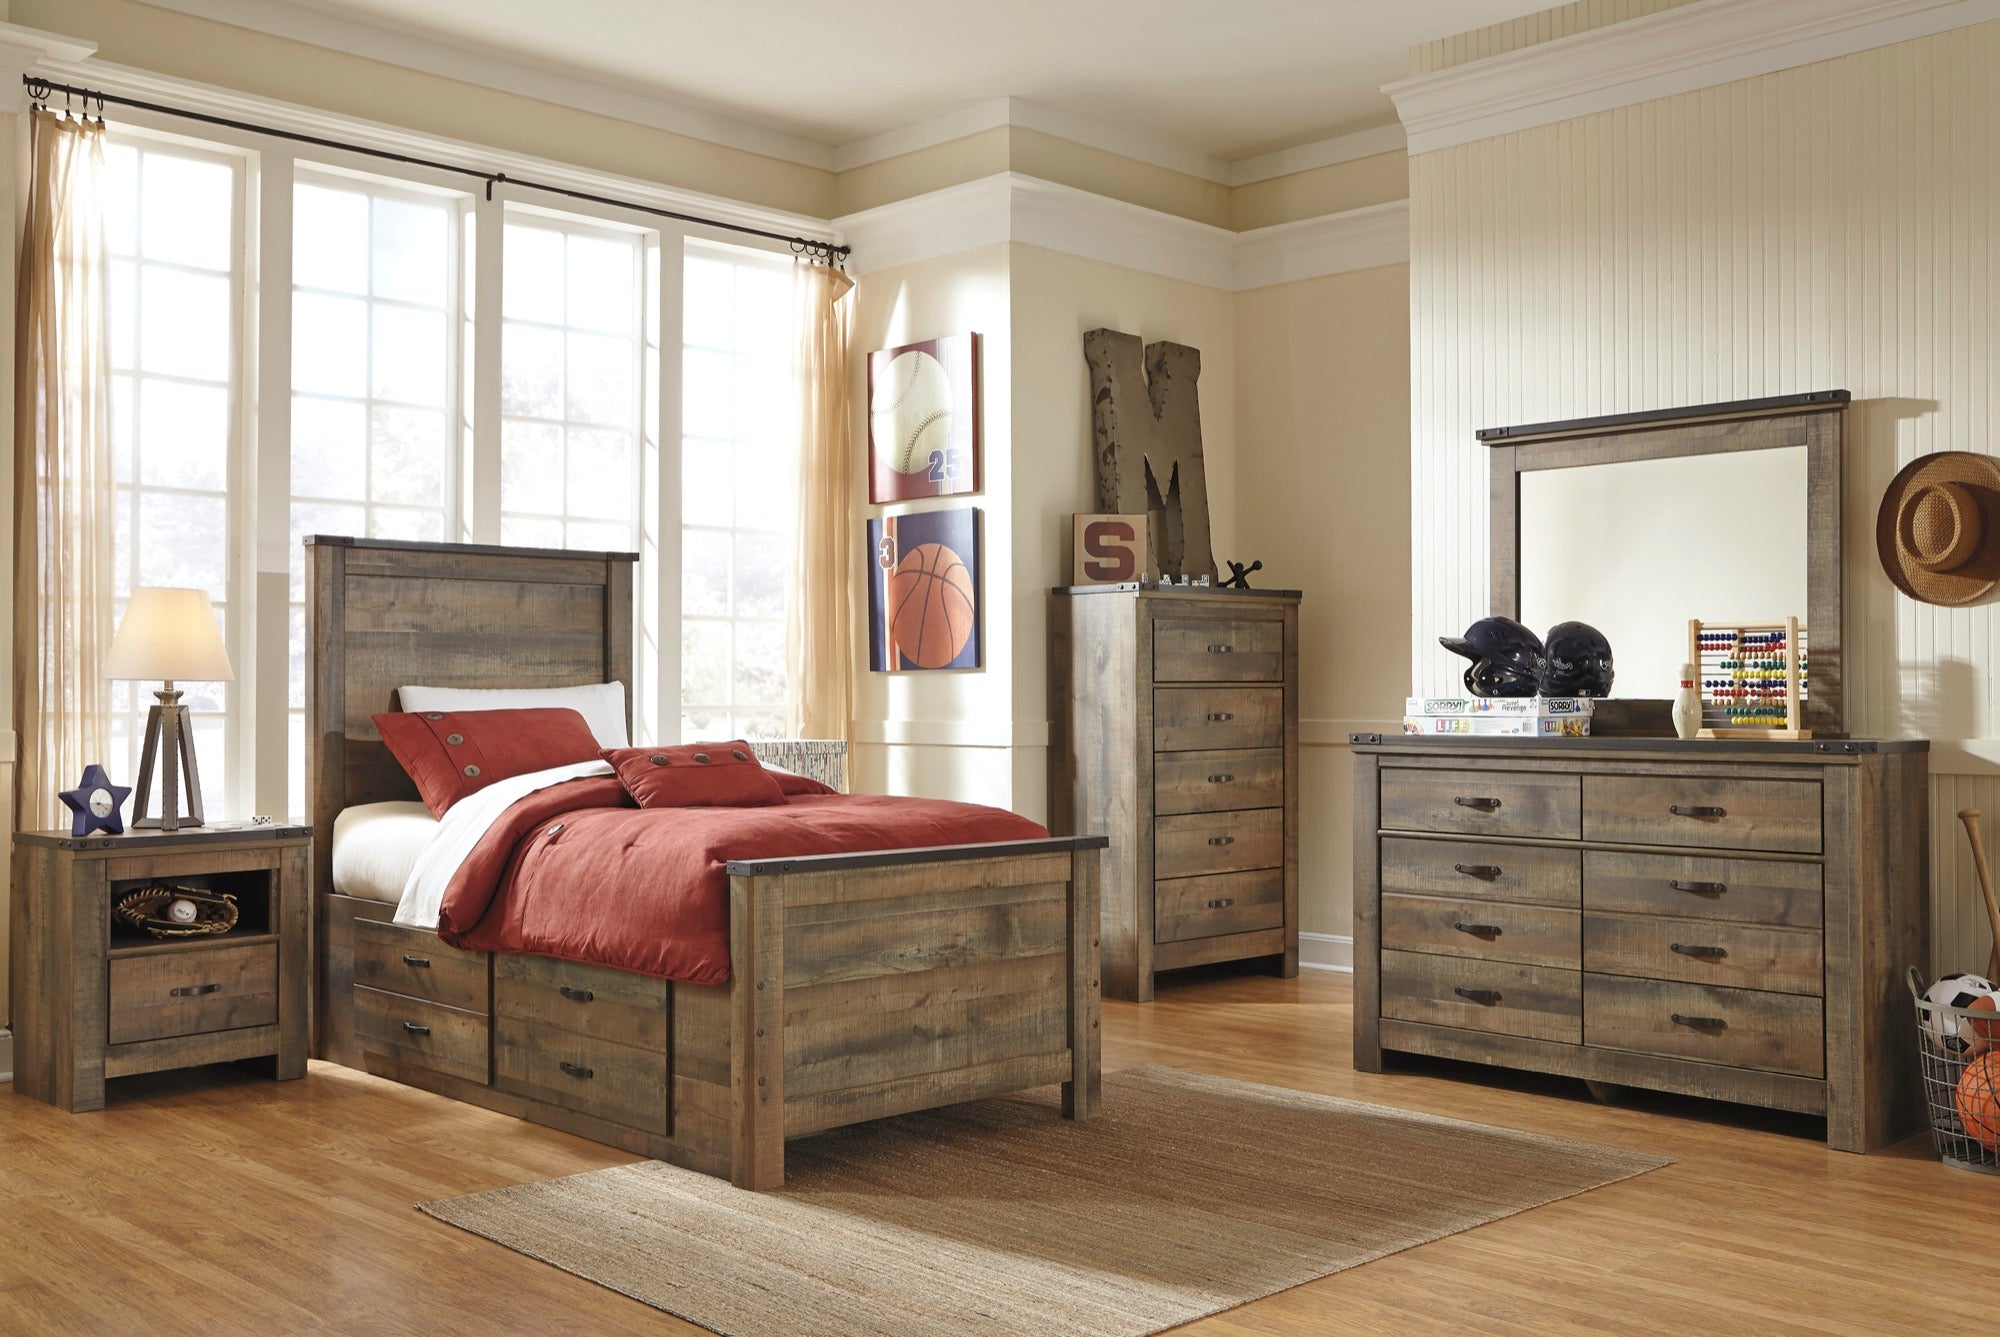 ashley furniture childrens bedroom sets